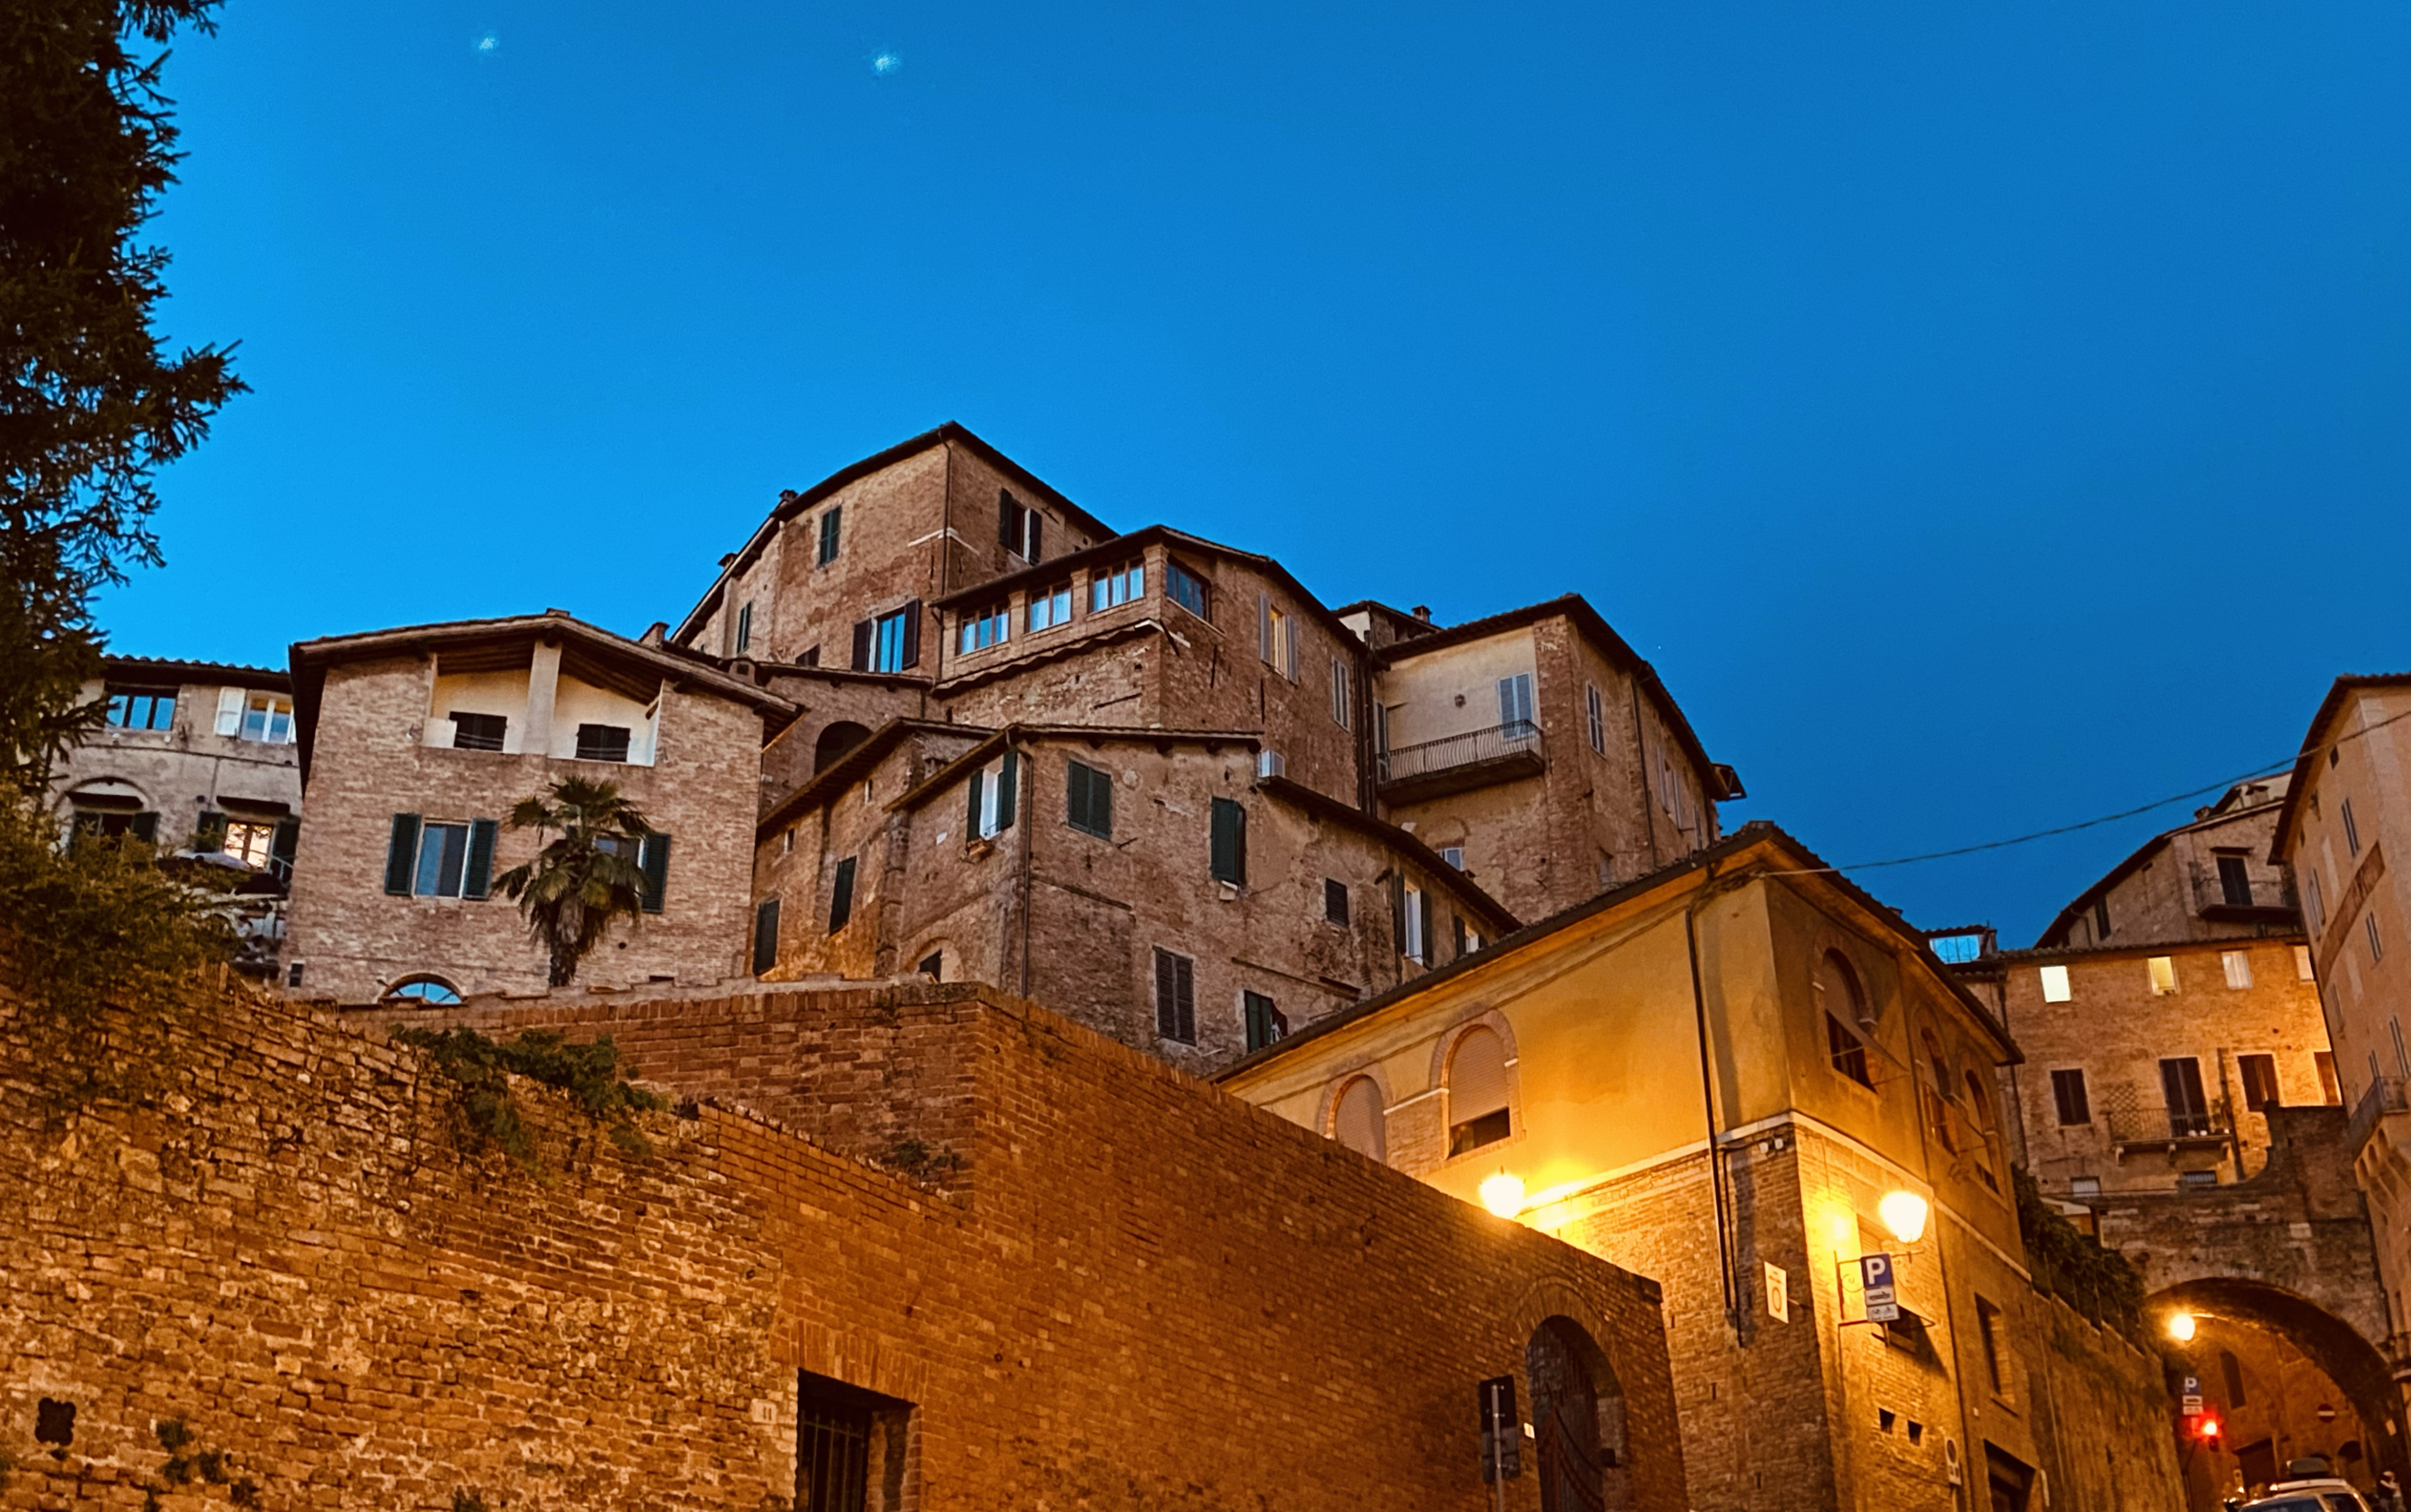 意大利托斯卡纳地区的锡耶纳在历史和人文方面与佛罗伦萨不分伯仲，锡耶纳也是文艺复兴发源地，穿梭在狭窄的